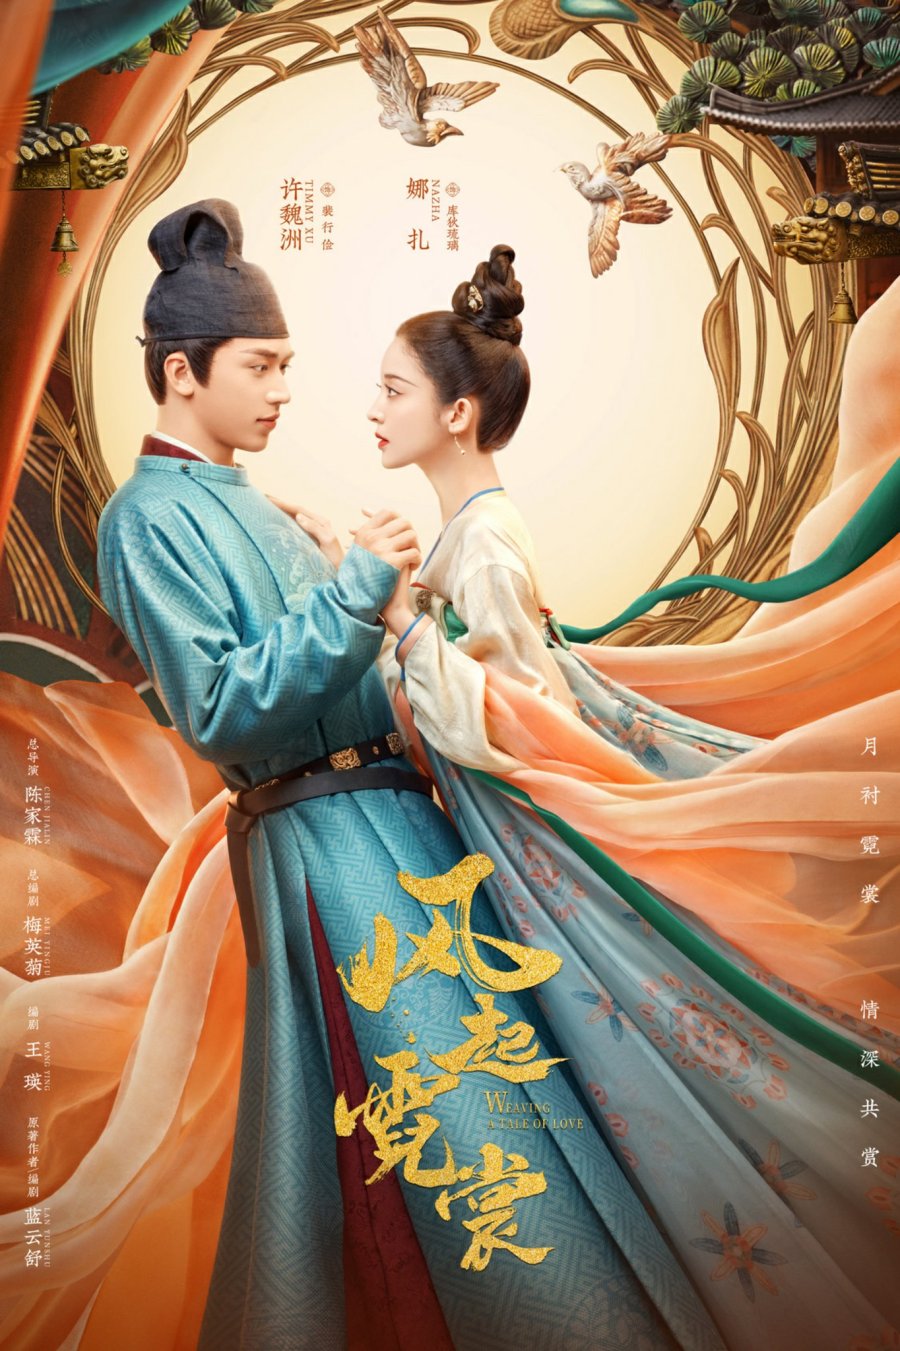 Weaving a Tale of Love (2021) แสงจันทราแห่งราชวงศ์ถัง พากย์ไทย (จบ)